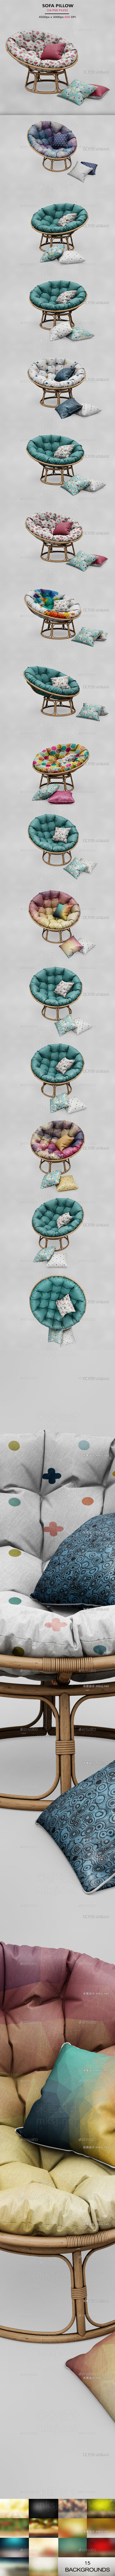 PSD圆形沙发椅编制木藤椅抱枕photoshop效果图设计VI样机贴图模板